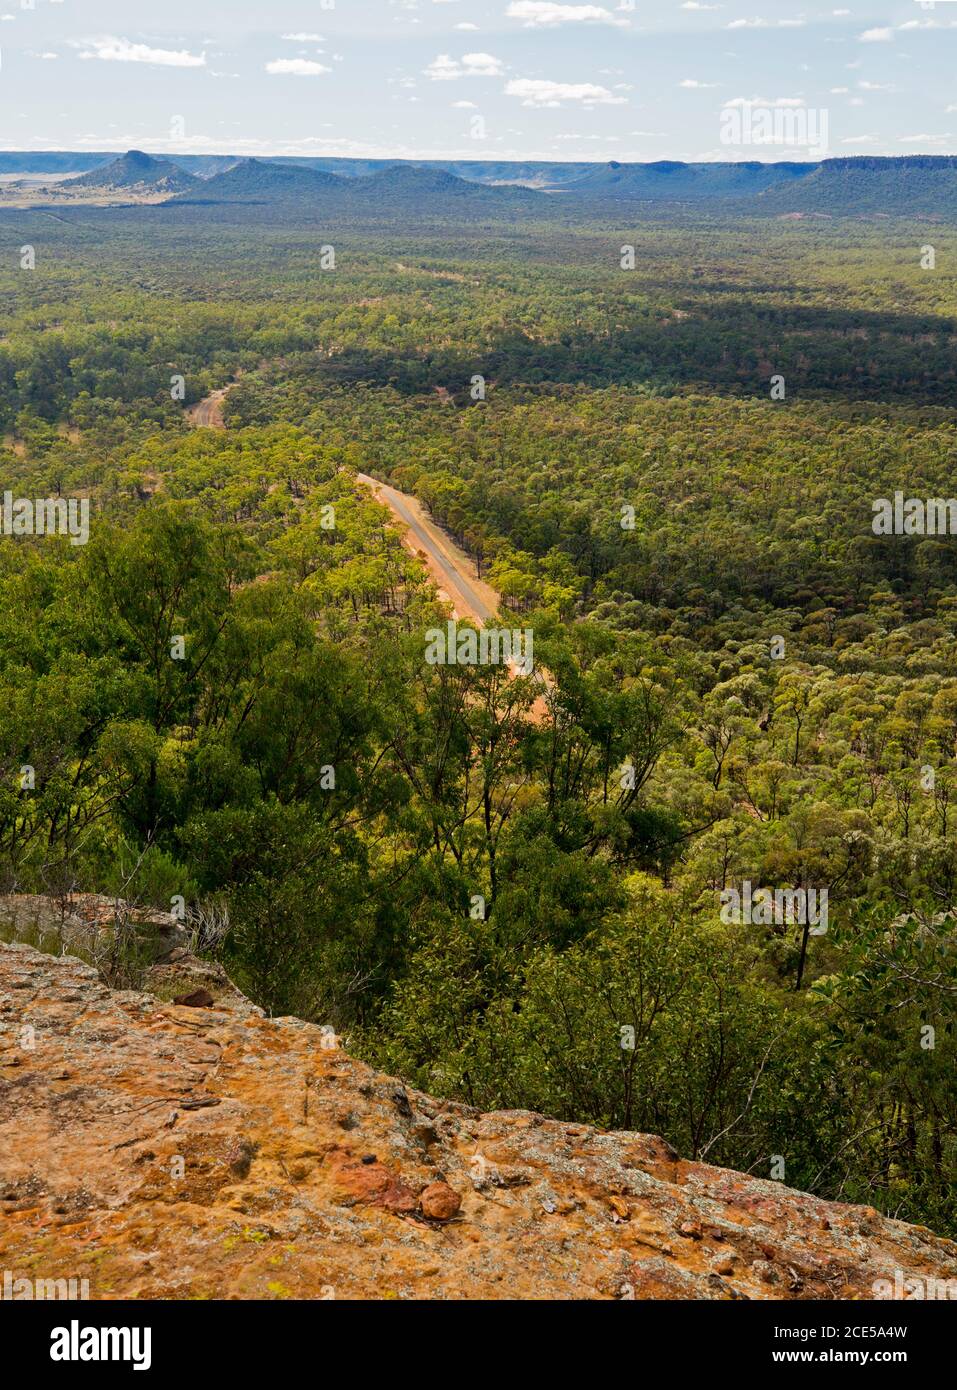 Paysage de collines et de vastes forêts séparées par une route étroite Vue depuis le point de vue haut à l'extrémité sud de la vallée d'Arcadia Dans le centre du Queensland Australie Banque D'Images